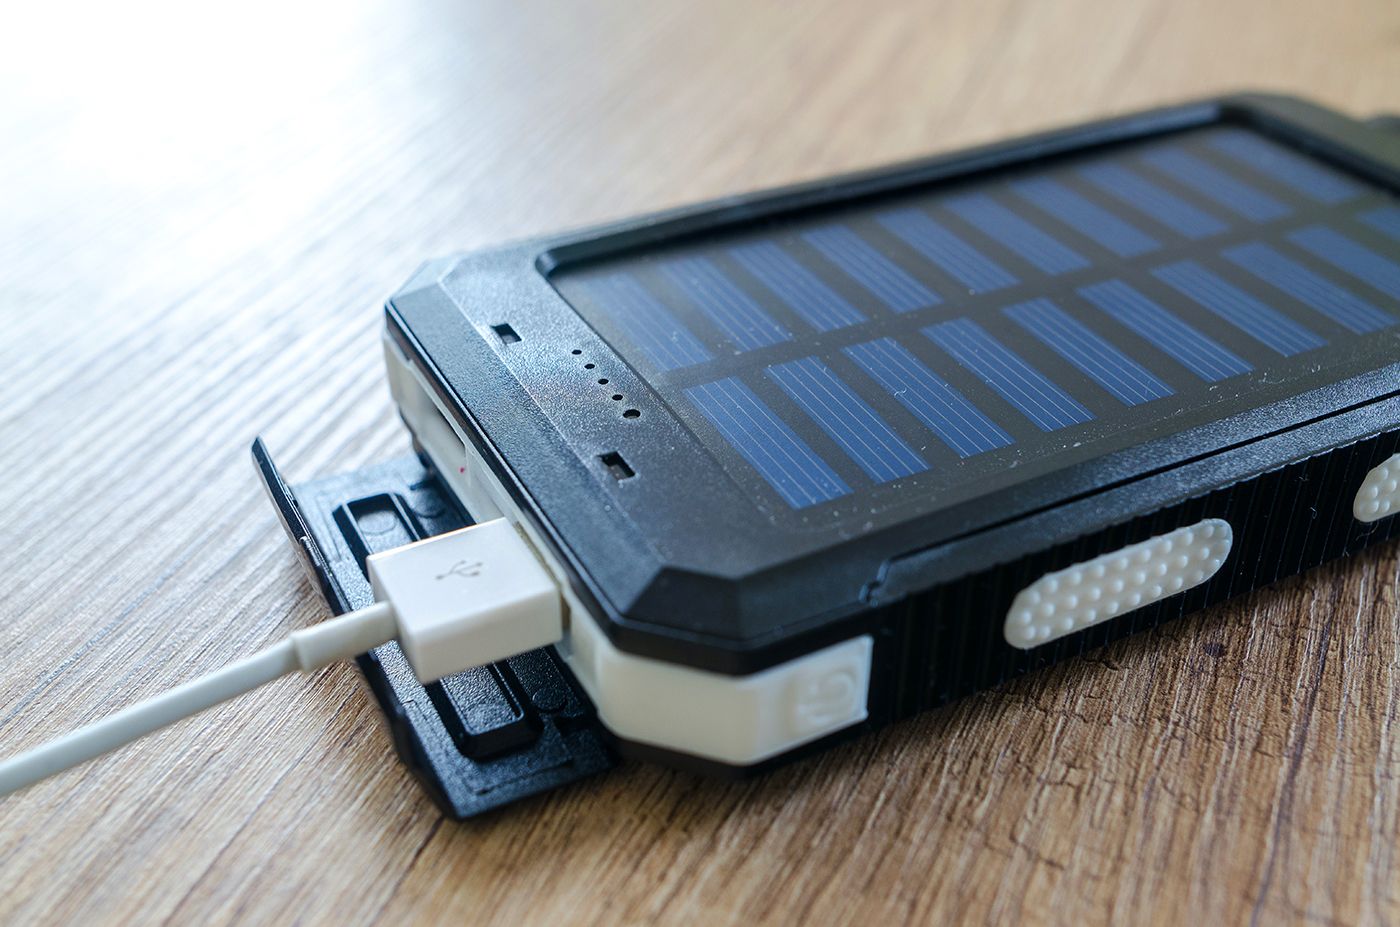 solar powered power bank iPhone 1 - 7 suggerimenti per caricare il tuo iPhone più velocemente